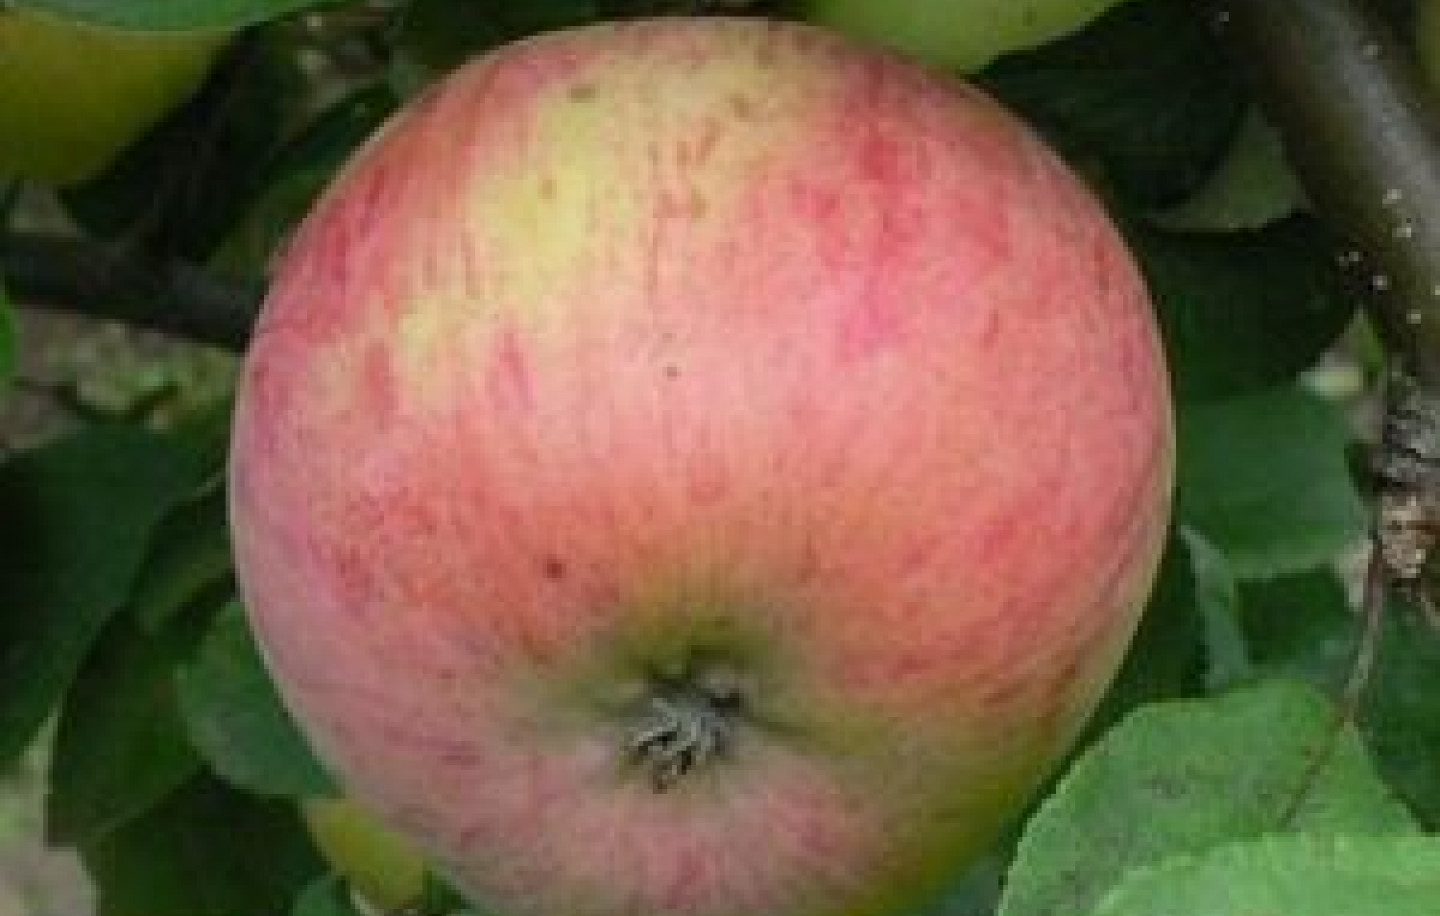 Фото яблони штрейфлинг фото и описание сорта